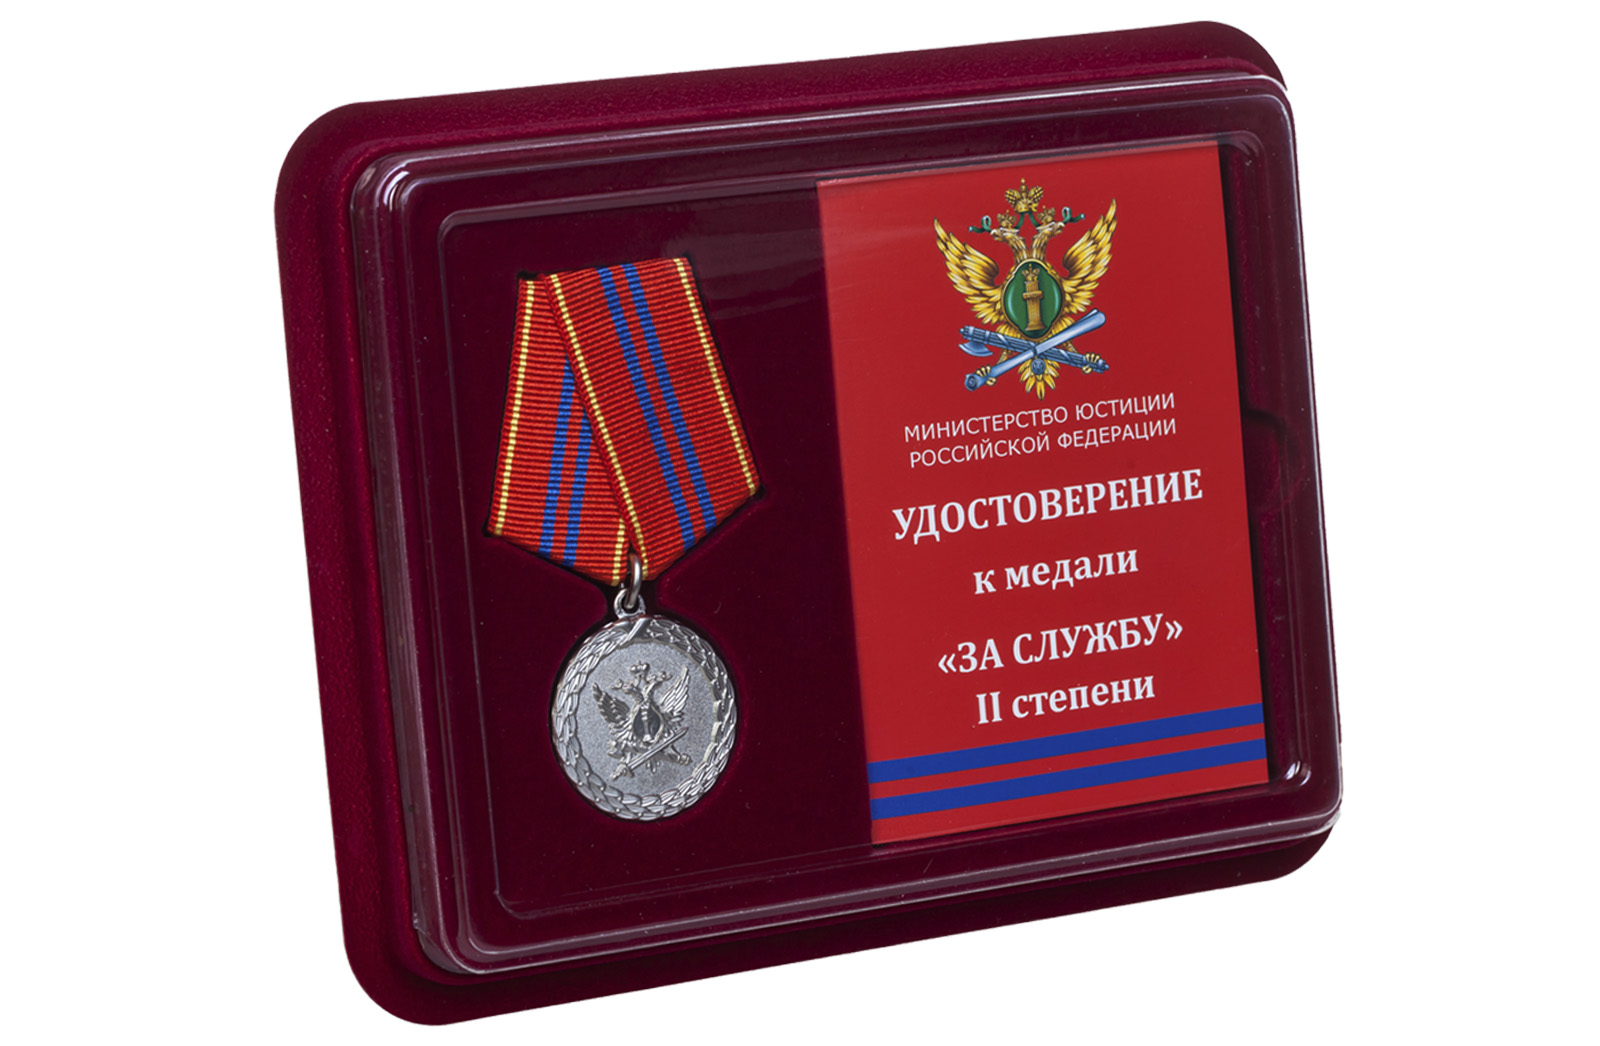 Купить медаль Минюста РФ За службу 2 степени оптом или в розницу